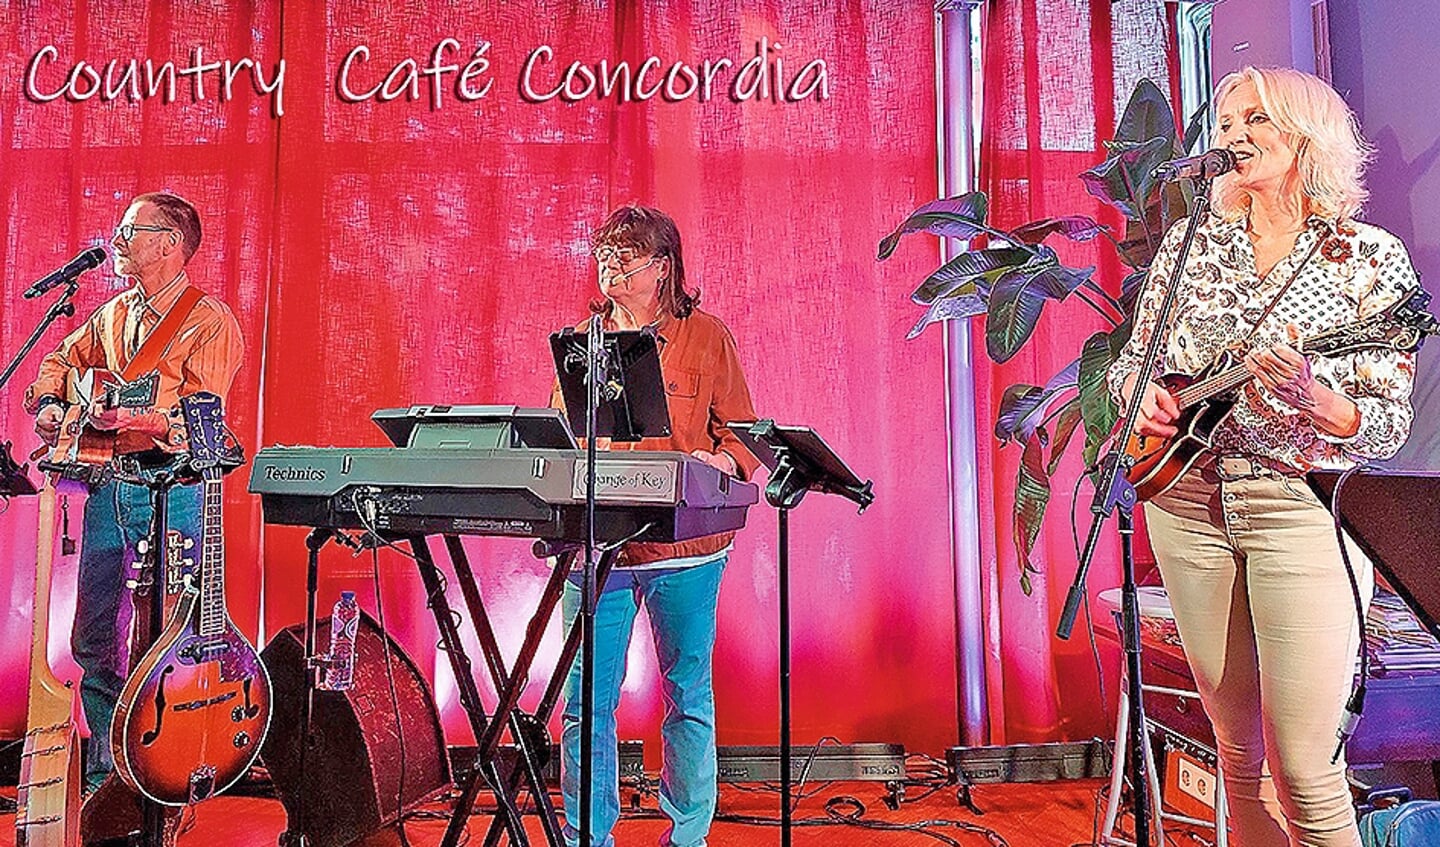 Countrycafé ‘Call a Song’